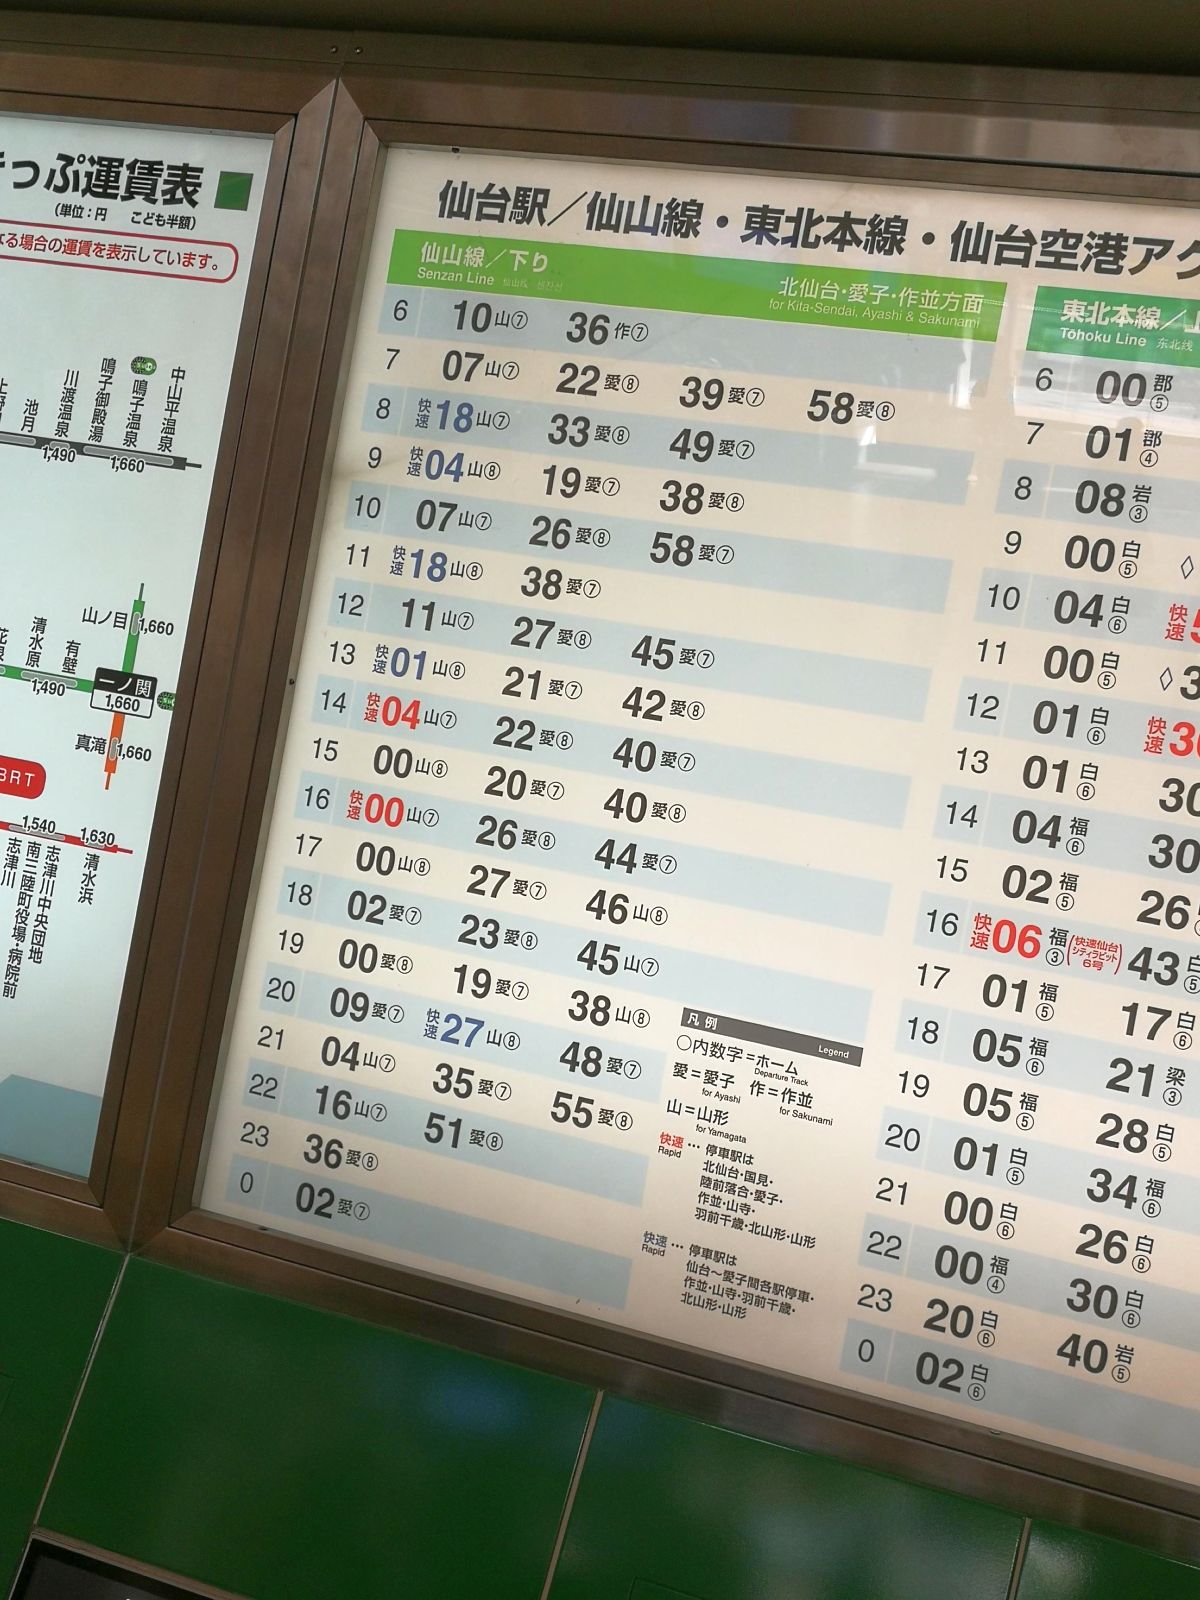 仙山線の時刻表